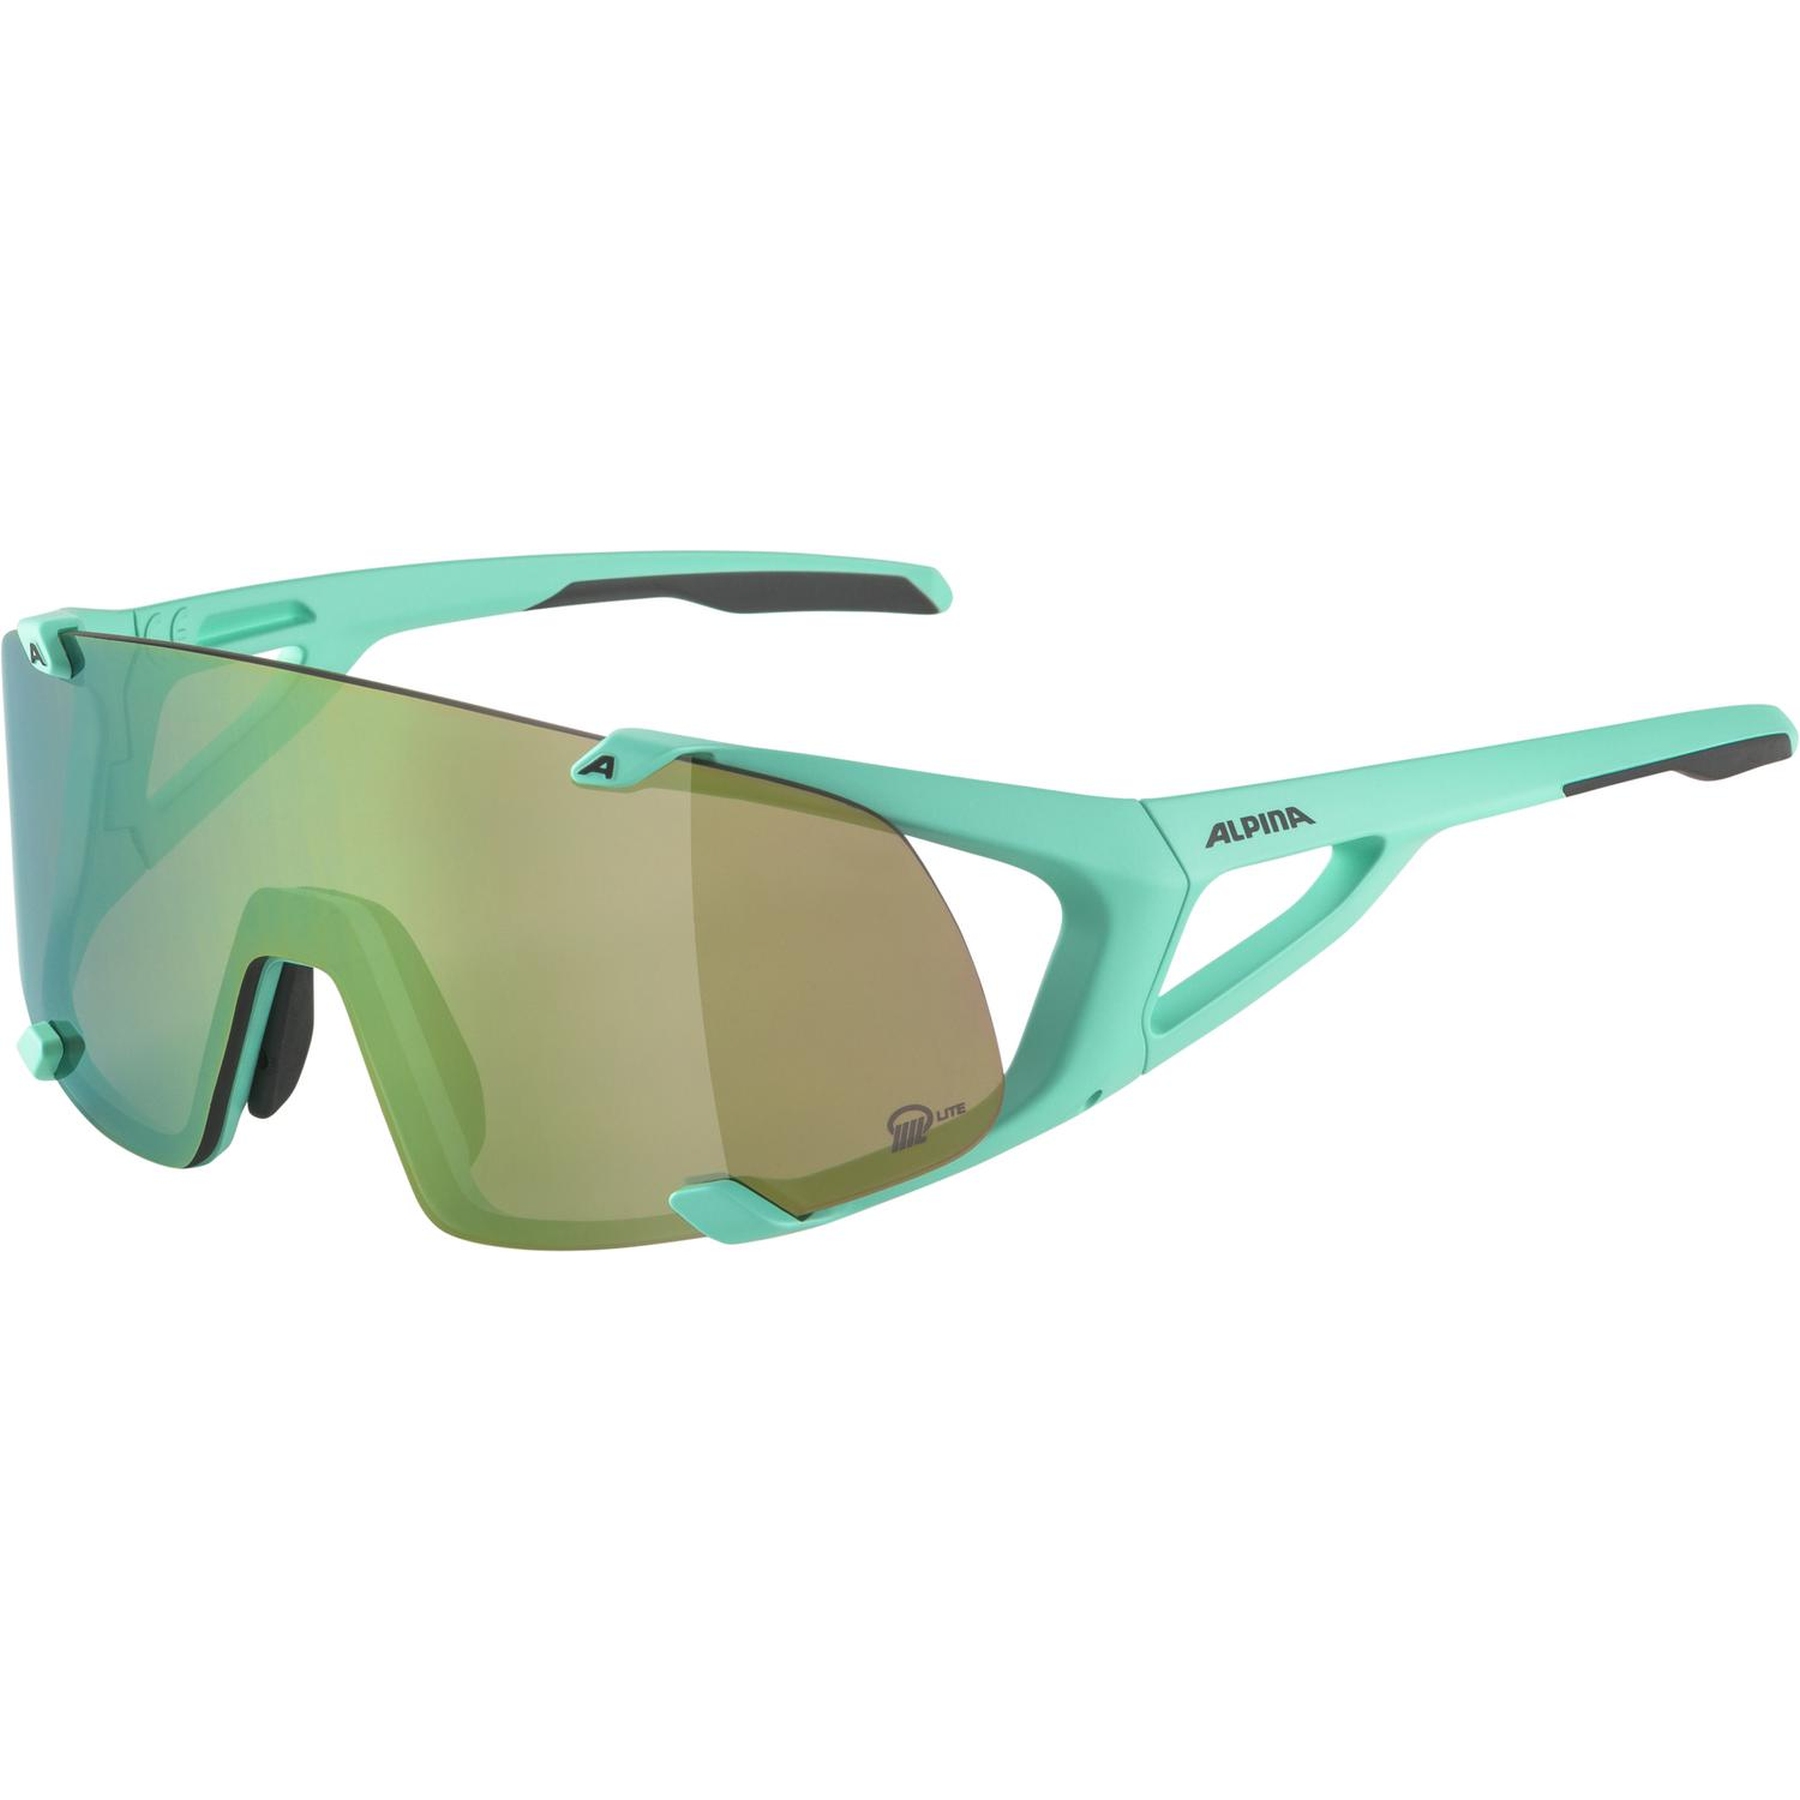 Produktbild von Alpina Hawkeye S Q-Lite Brille - turquoise matt/Q-Lite Green Mirror